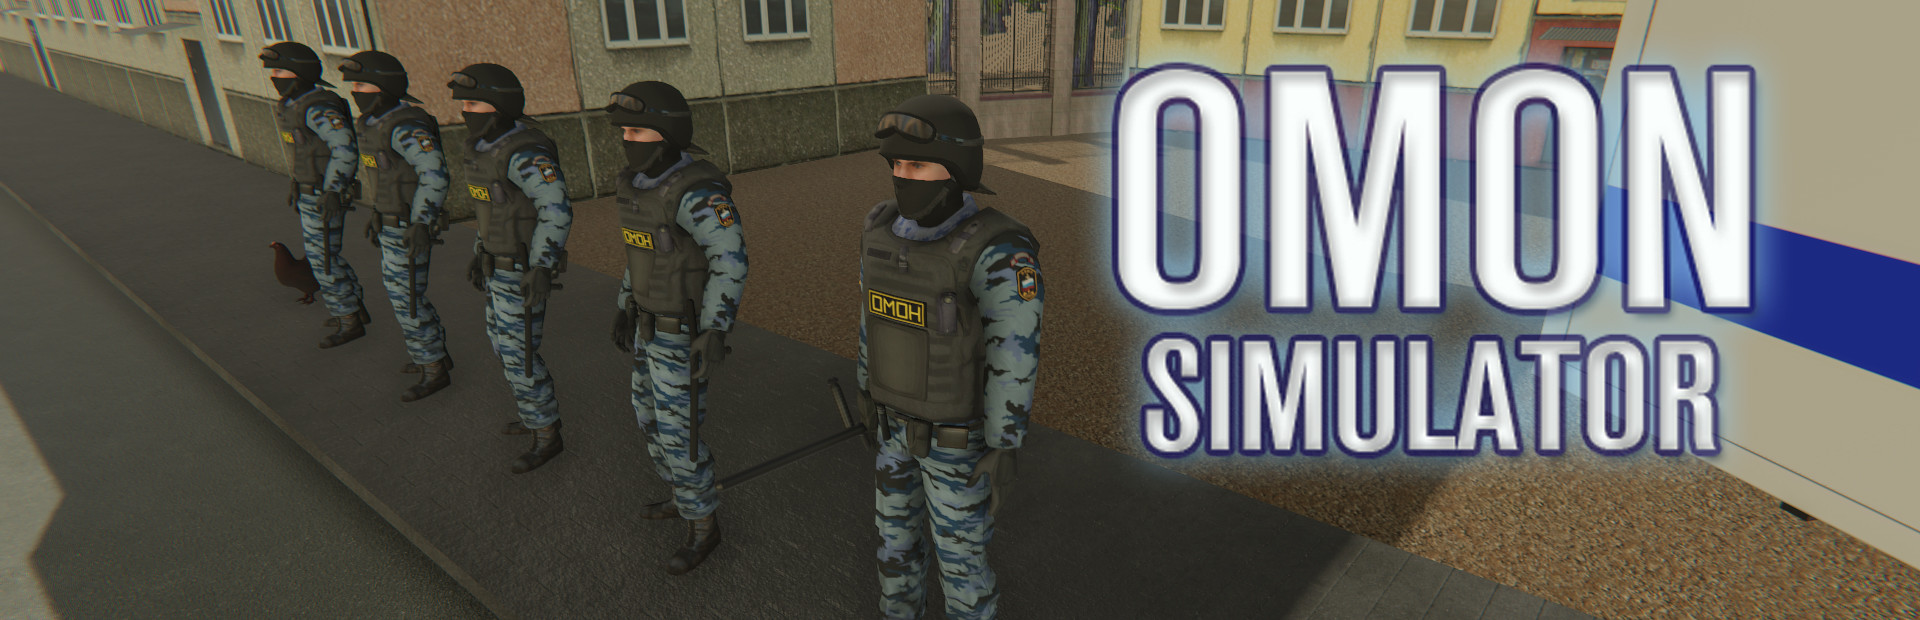 OMON Simulator cover image